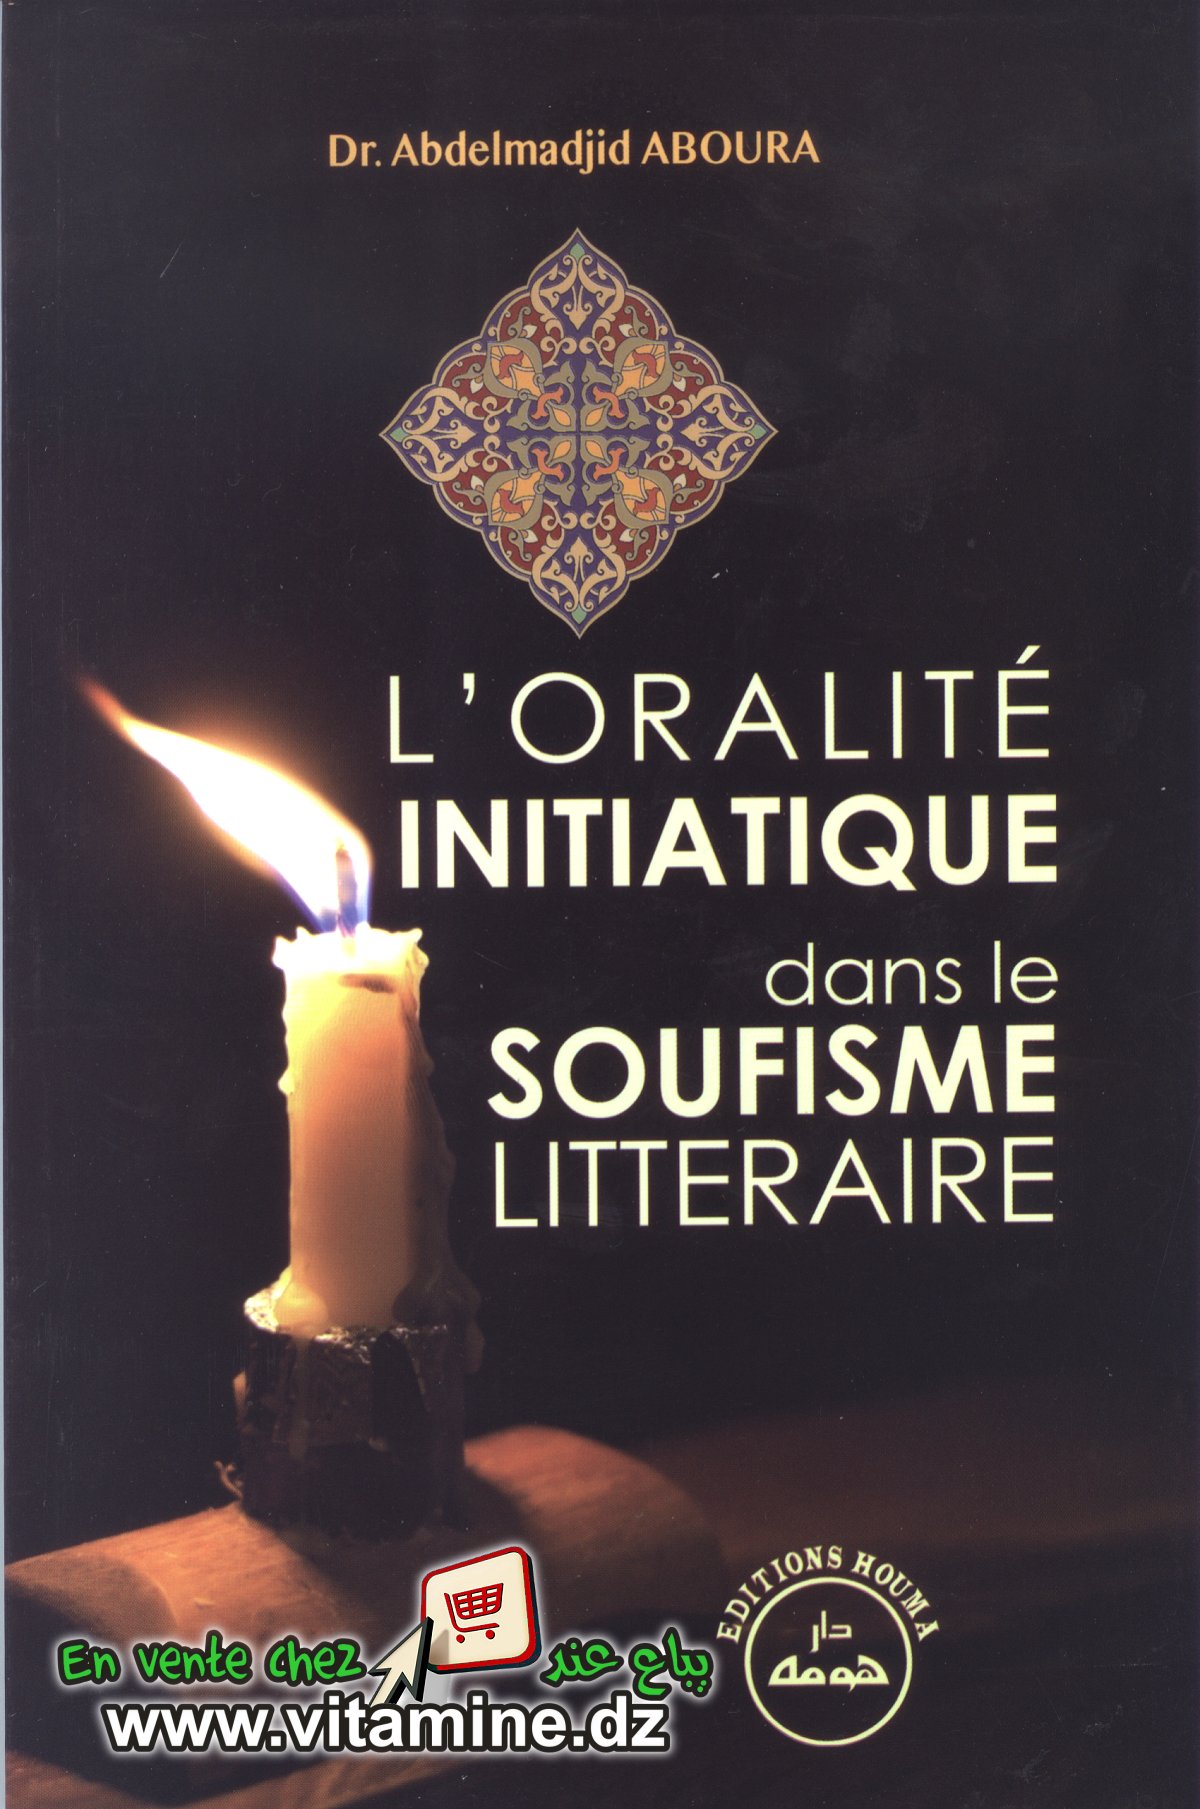 Dr. Abdelmadjid Aboura - L'Oralité initiatique dans le soufisme littéraire